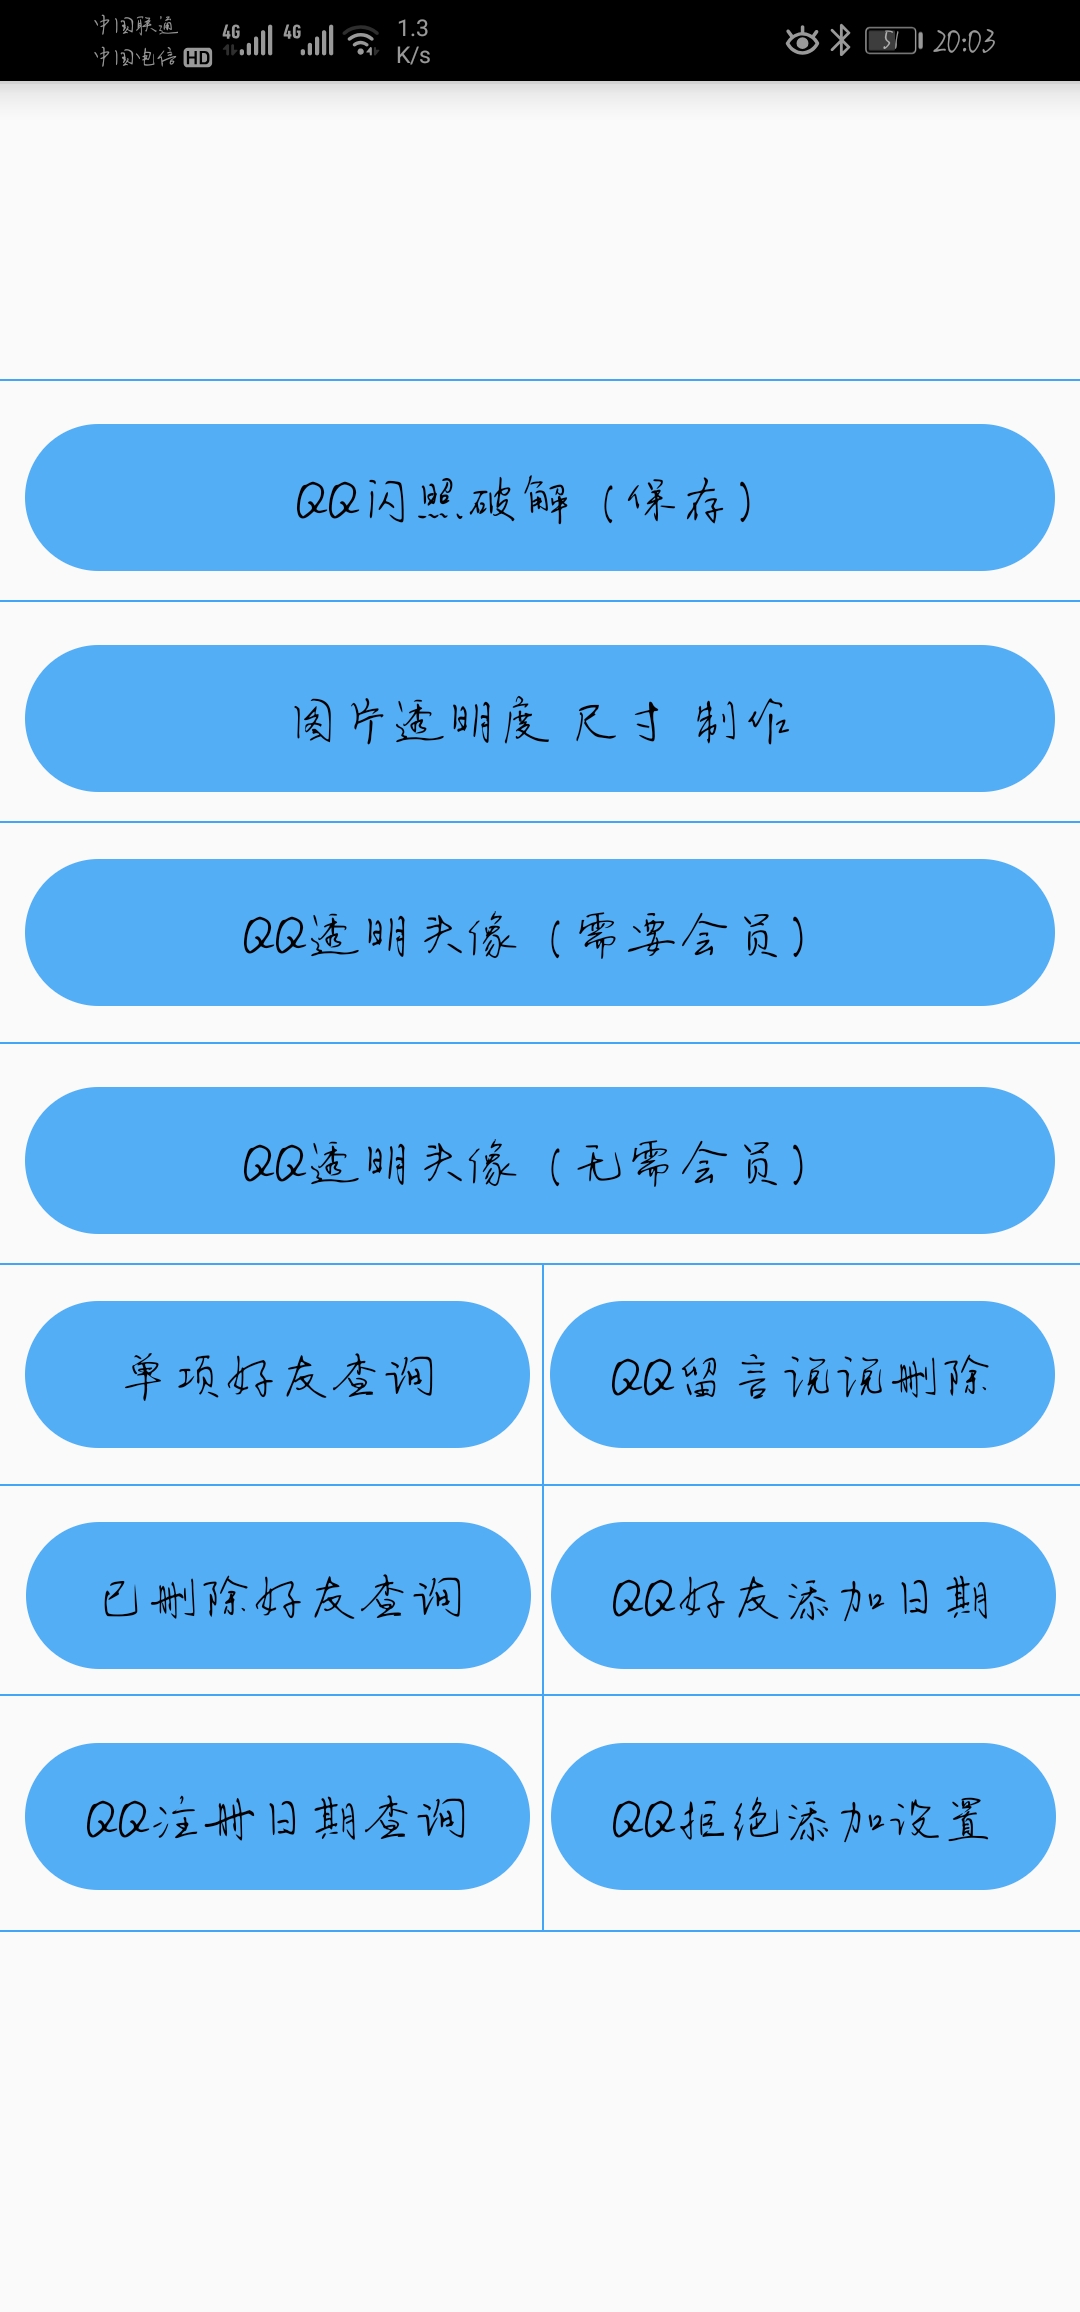 QQ小工具箱-万福,QQ小工具箱-万福  QQ 软件 撩妹 工具 第1张,QQ,软件,虚拟主机,工具,第1张